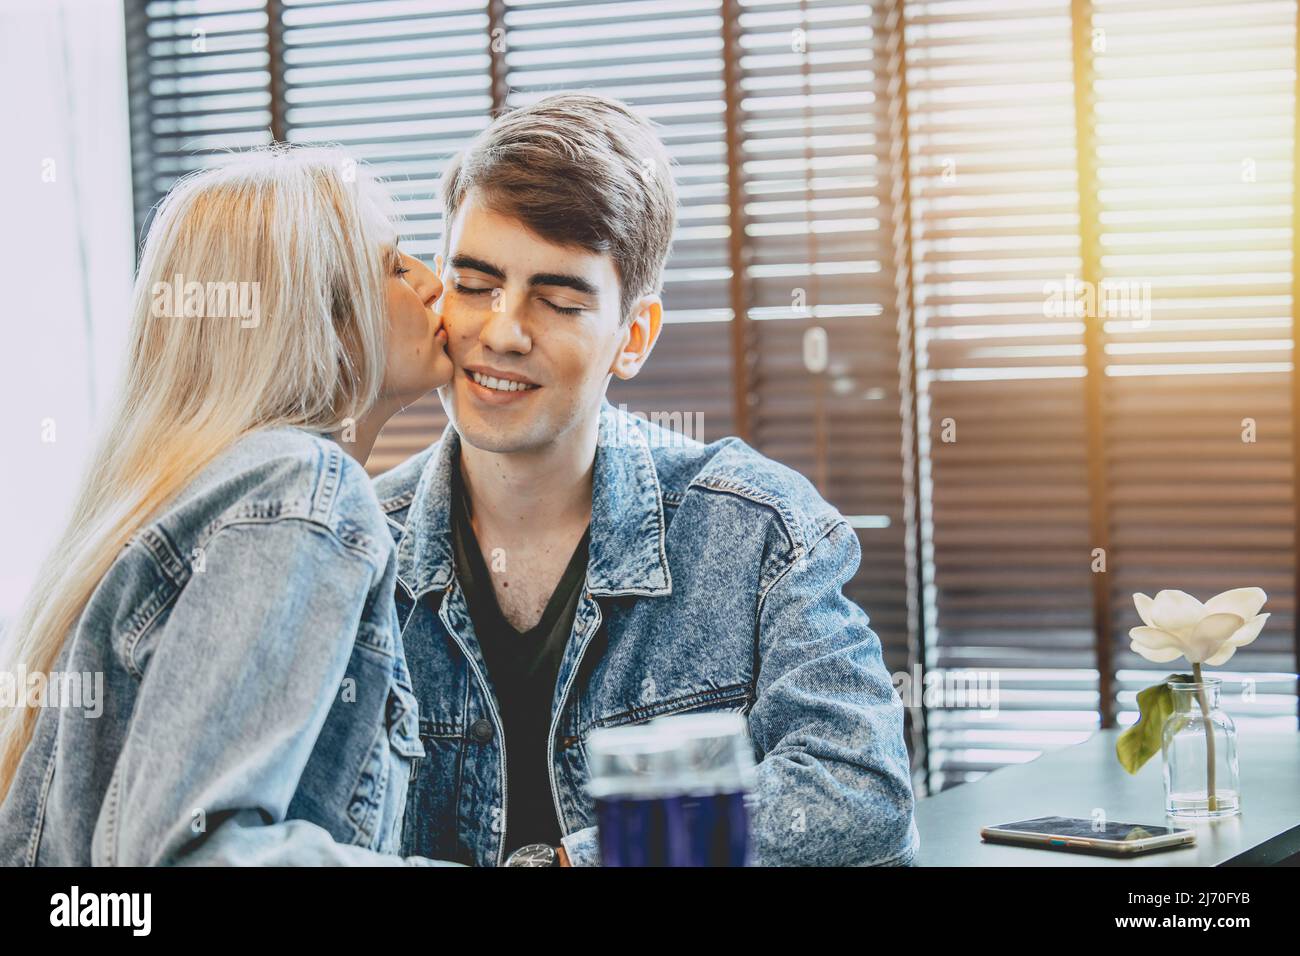 giovane coppia amante baciare insieme, guancia bacio amore espressione nello spazio pubblico. Foto Stock